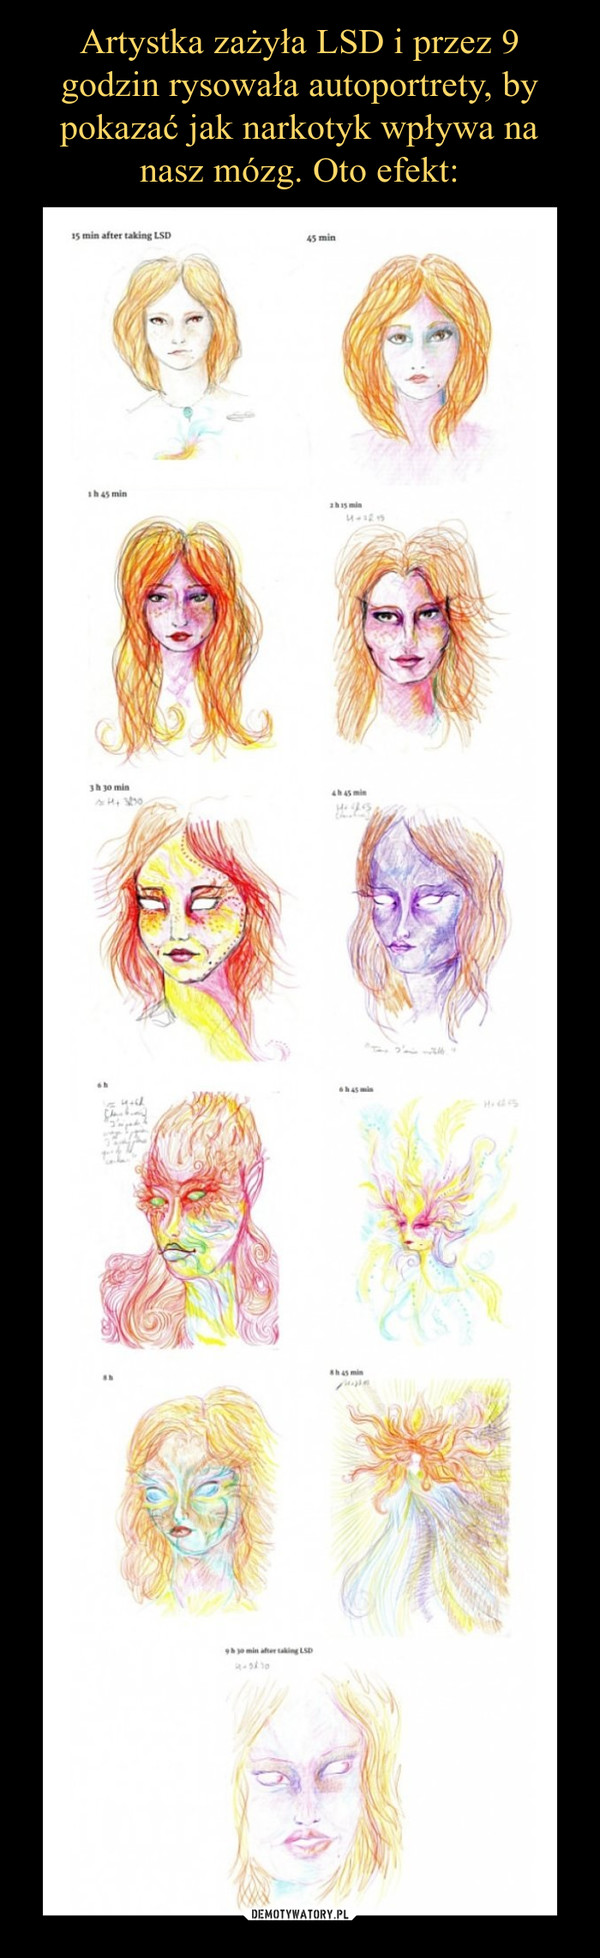 Artystka zażyła LSD i przez 9 godzin rysowała autoportrety, by pokazać jak narkotyk wpływa na nasz mózg. Oto efekt: